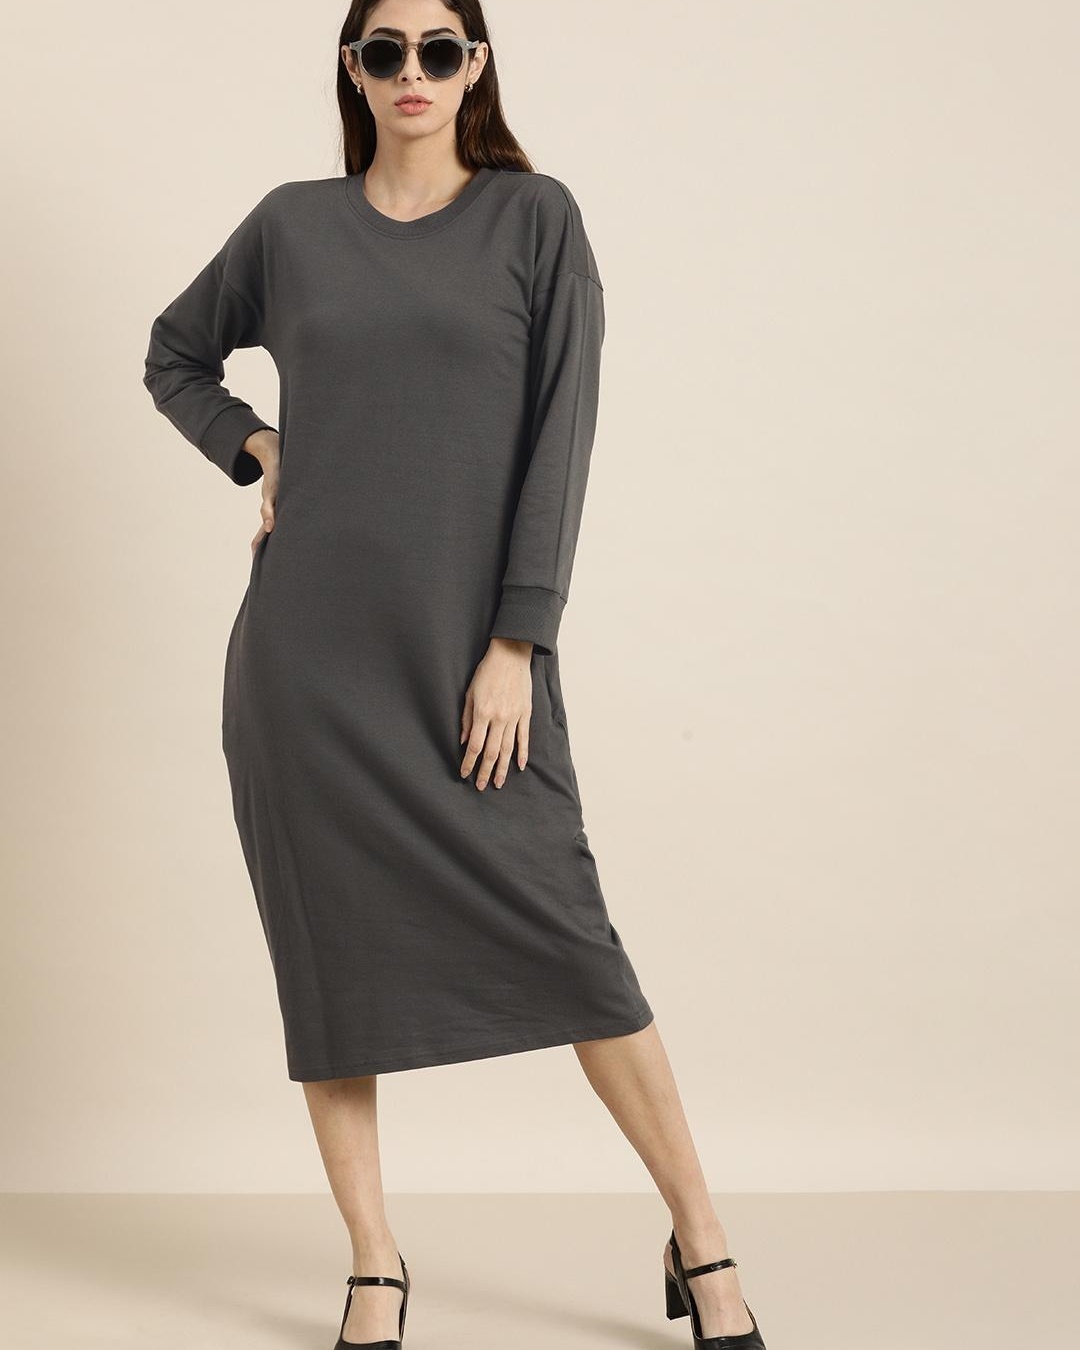 Buy Women's Grey Dress for Women Grey Online at Bewakoof